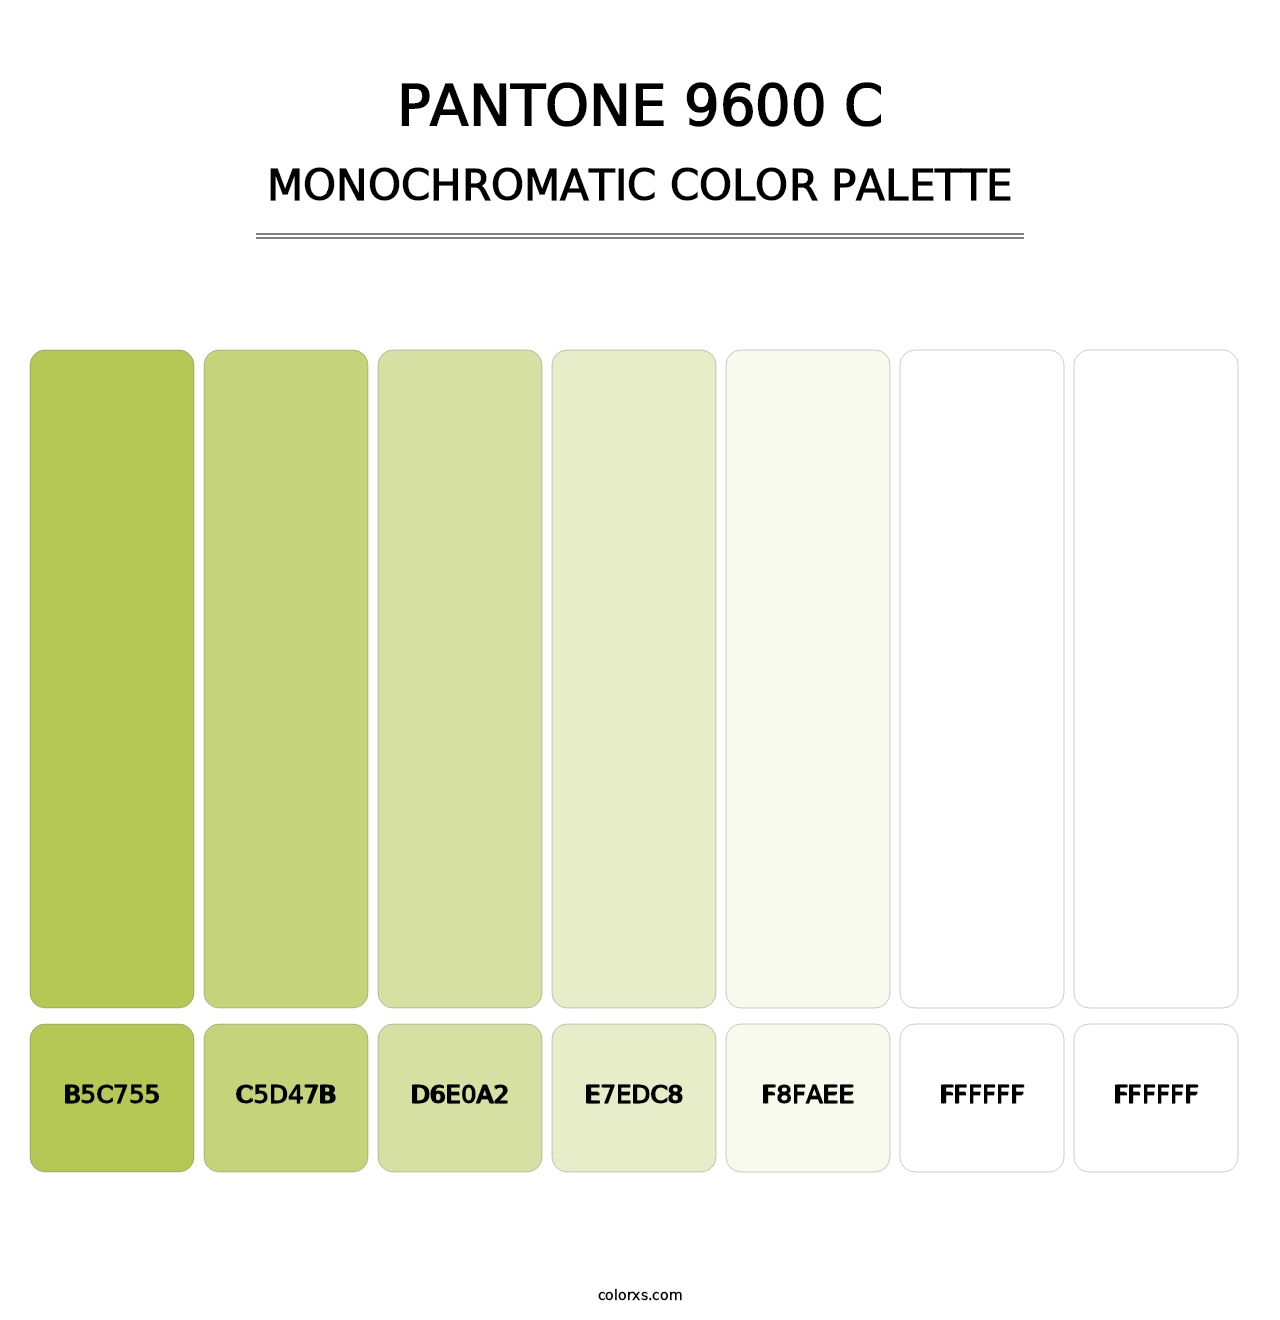 PANTONE 9600 C - Monochromatic Color Palette